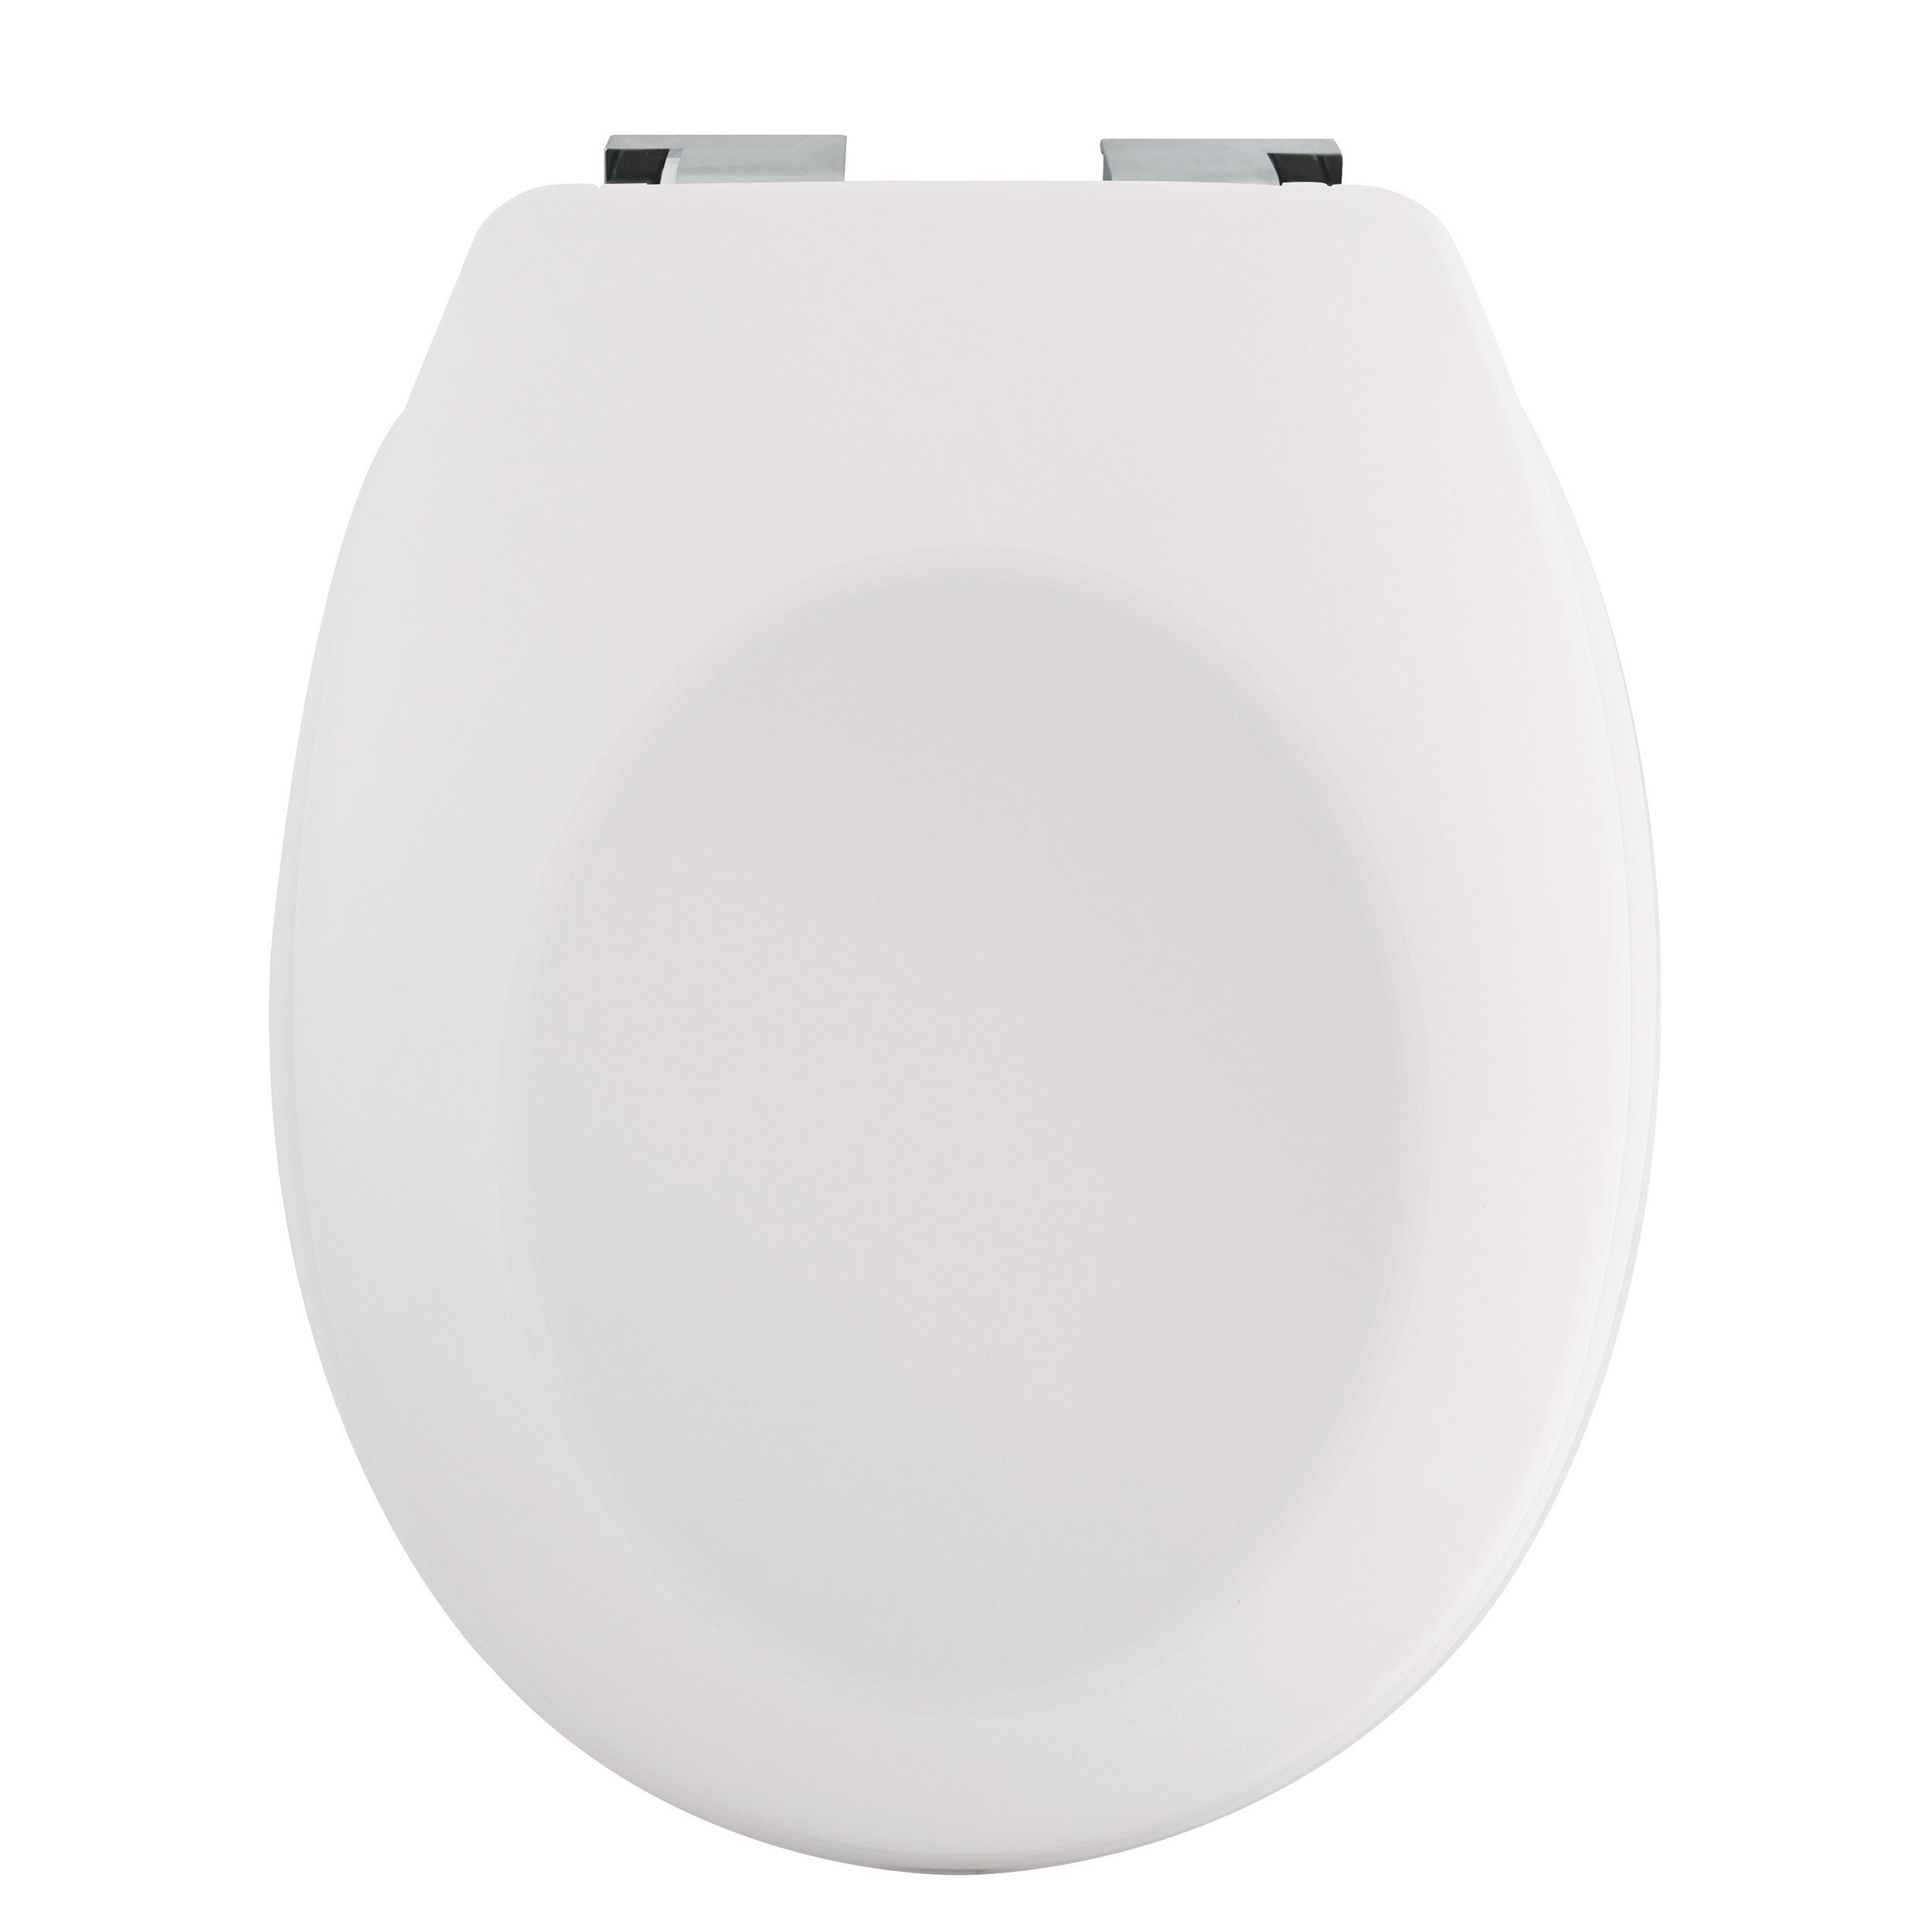 Toilettendeckel matt Soft bruchsicher, Premium Duroplast Kunststoff, Trendfarben Absenkautomatik, oval, Close aus neue Stabilität, weiß langlebig, NEELA, leichtem WC-Sitz hohe angesagter spirella in Optik,